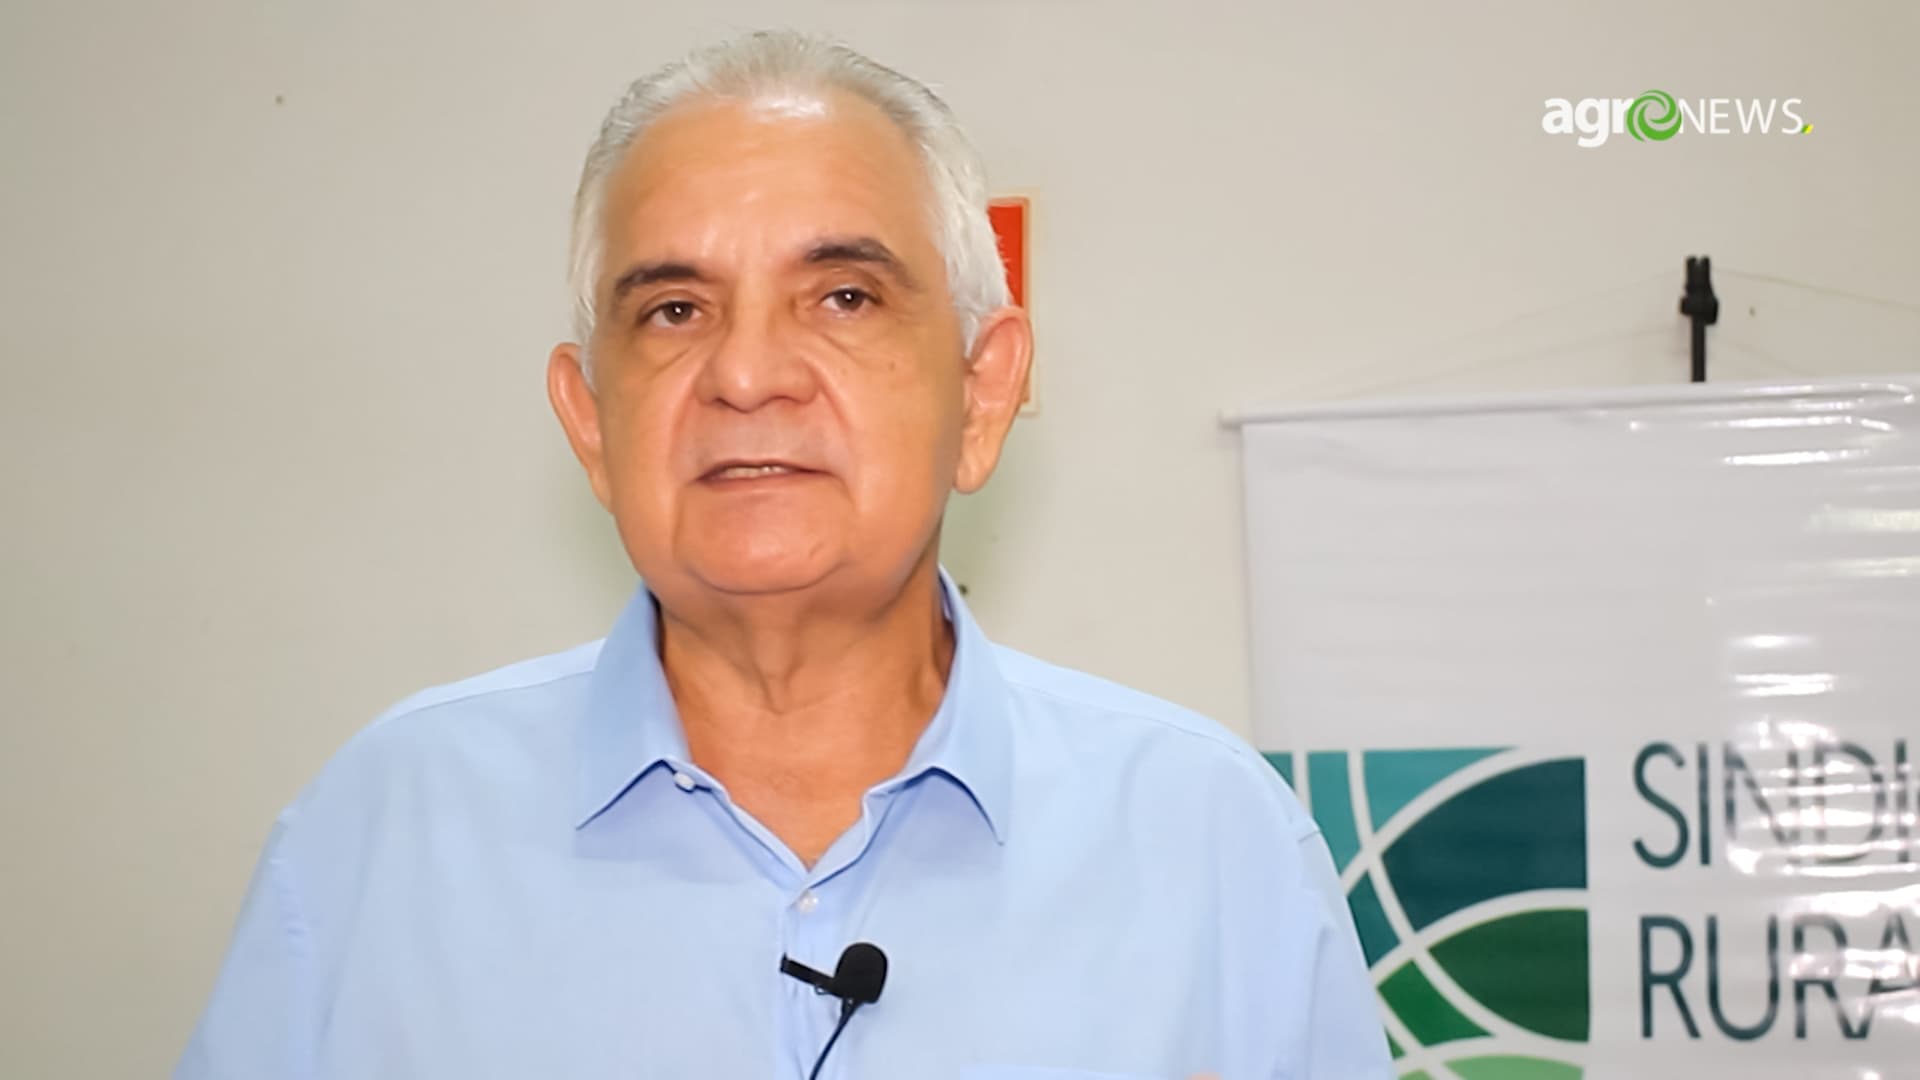 Sindicato Rural de Cuiabá tem novo presidente e Expoagro retorna em 2022